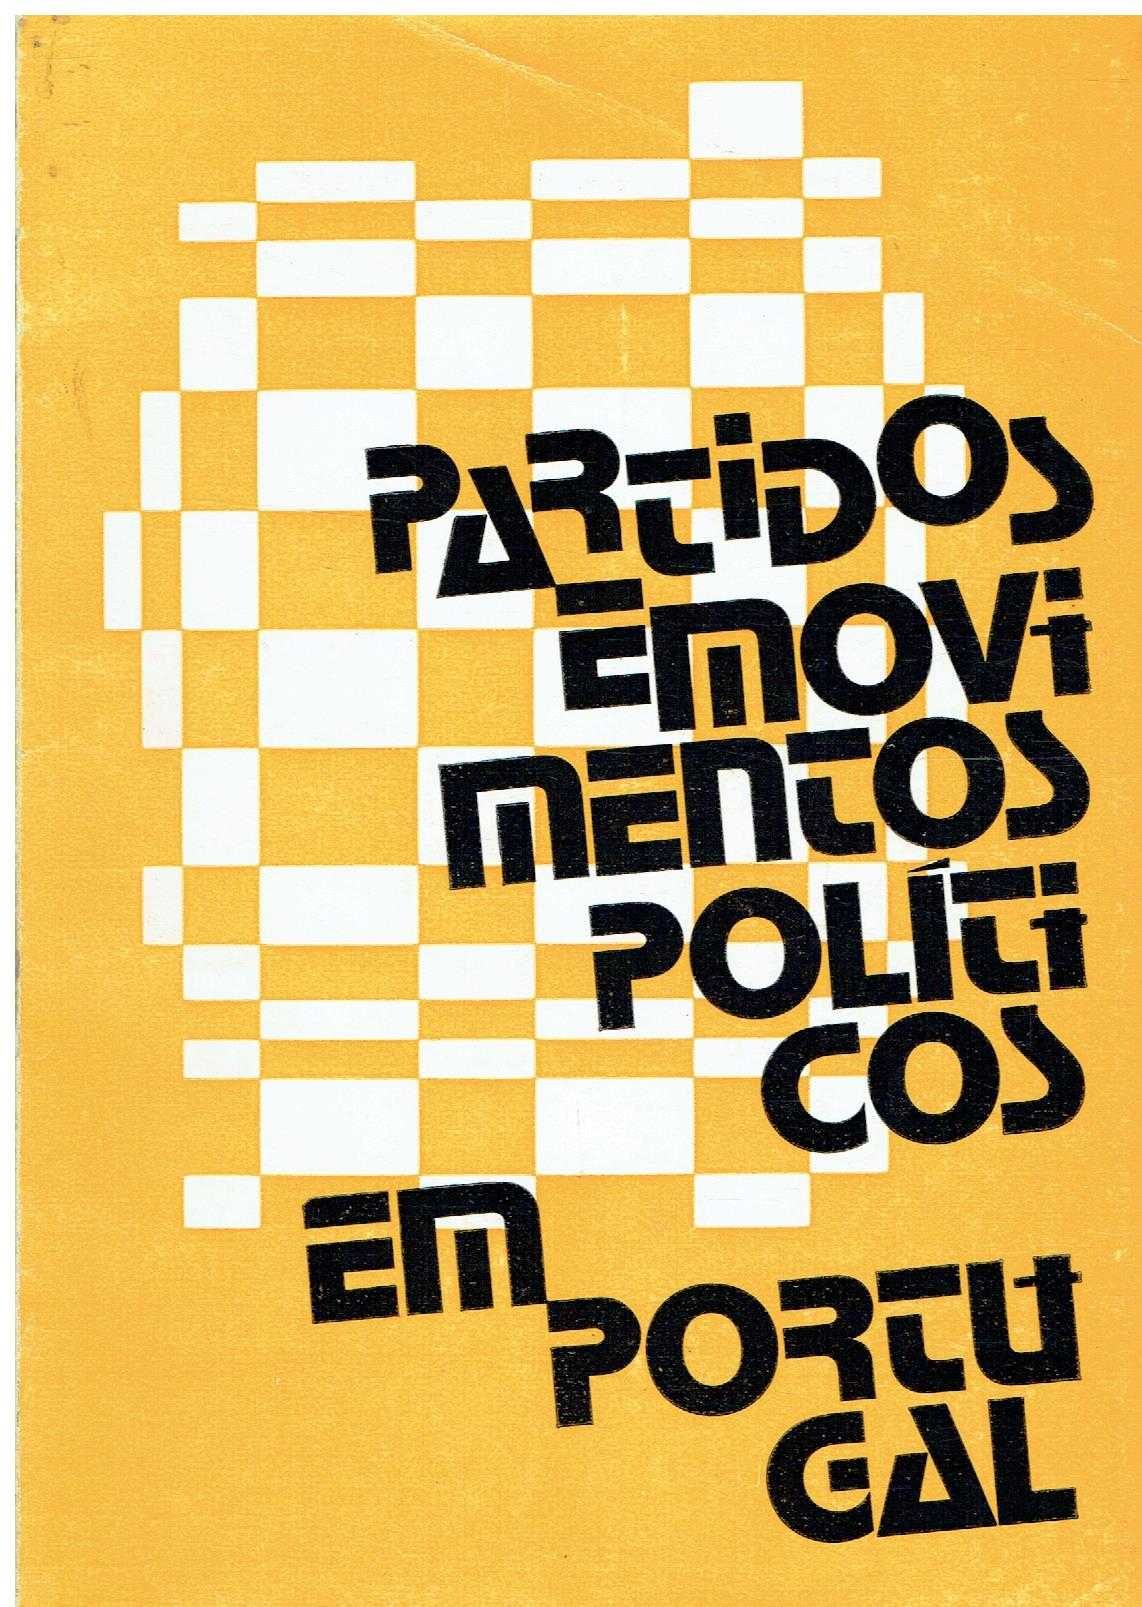 12787

Partidos e movimentos políticos em Portugal.